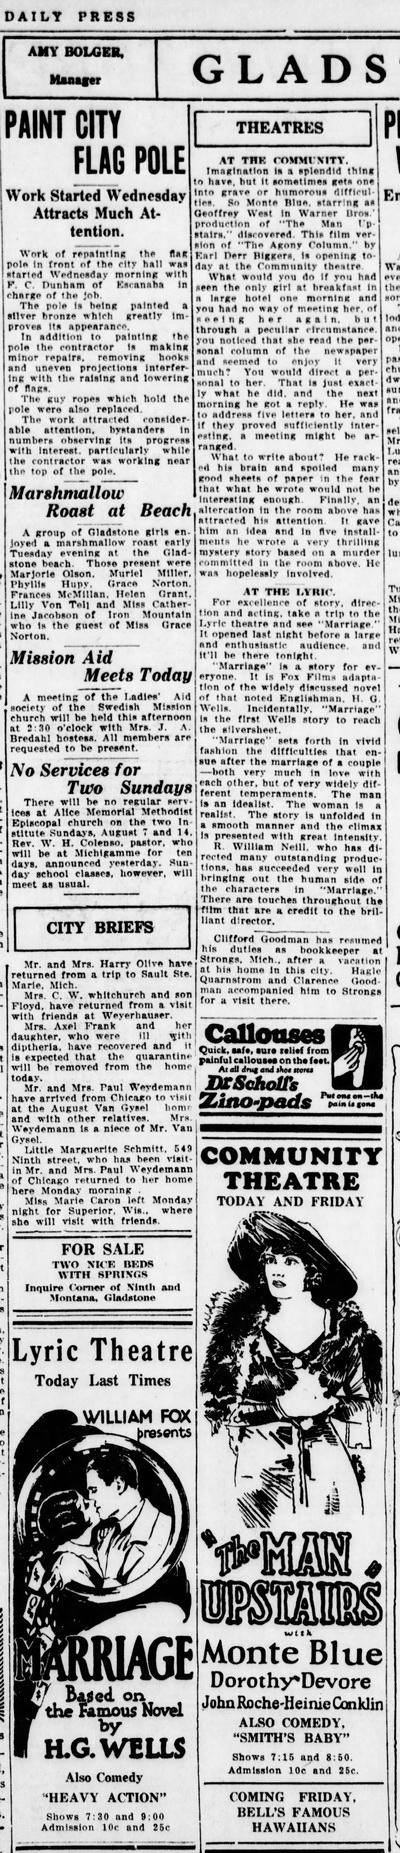 Rialto Theatre - The Escanaba Daily Press Aug 4 1927